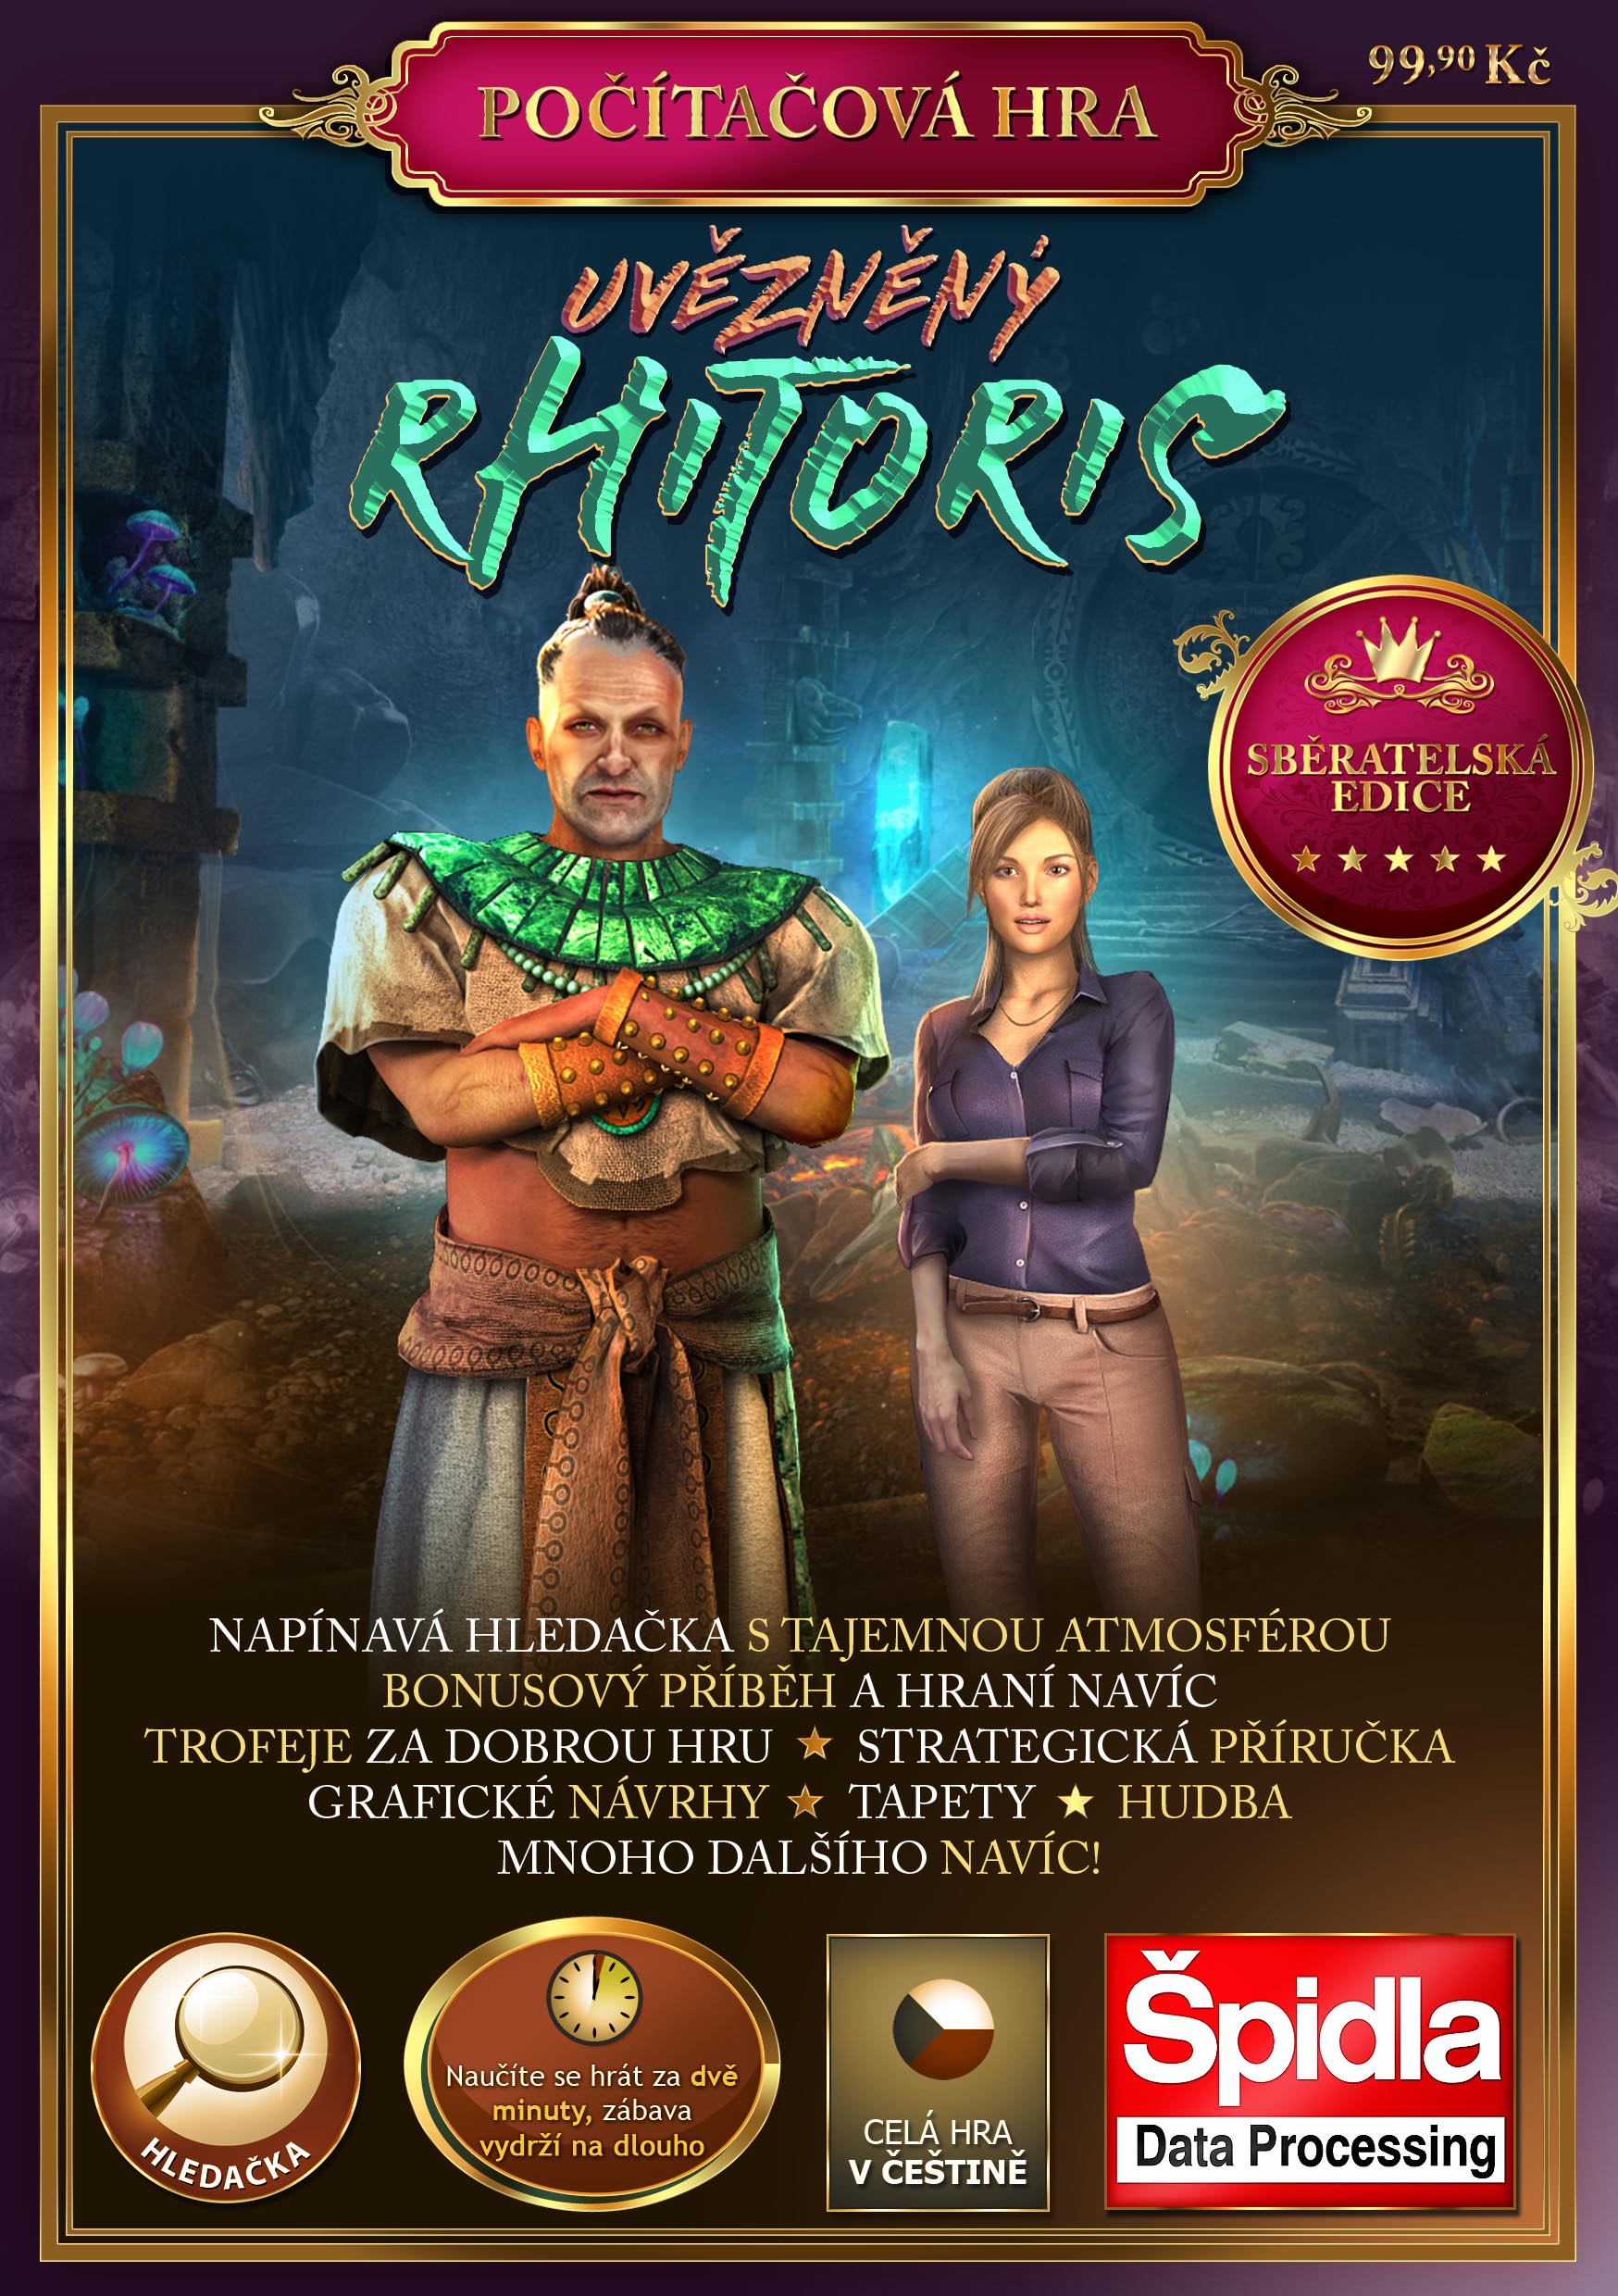 Uvězněný Rhitoris - Sběratelská edice